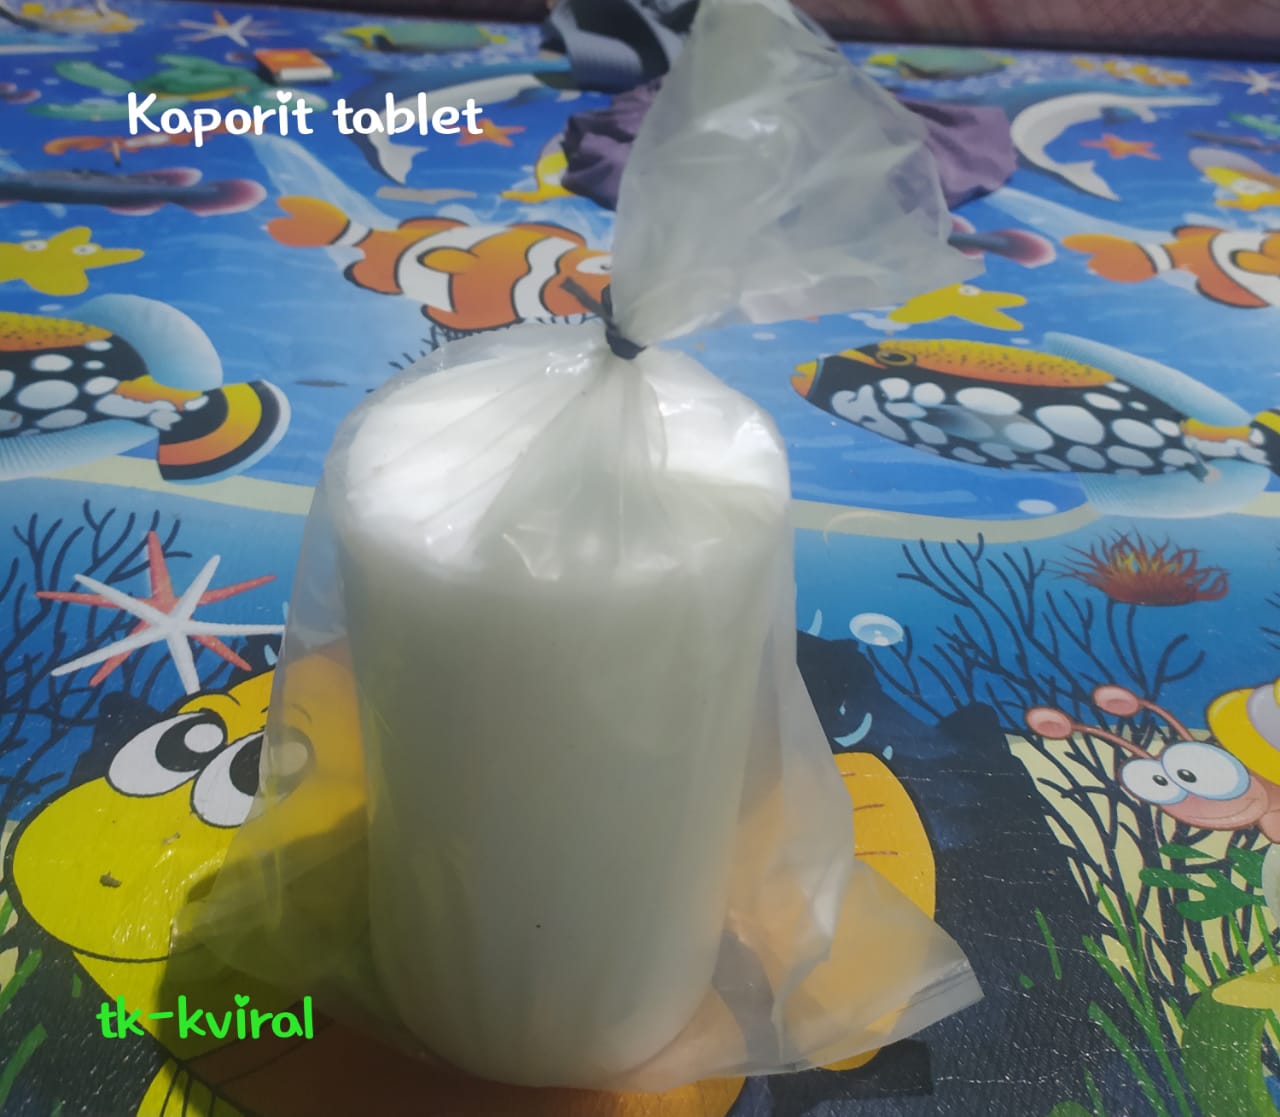 kaporit-tablet